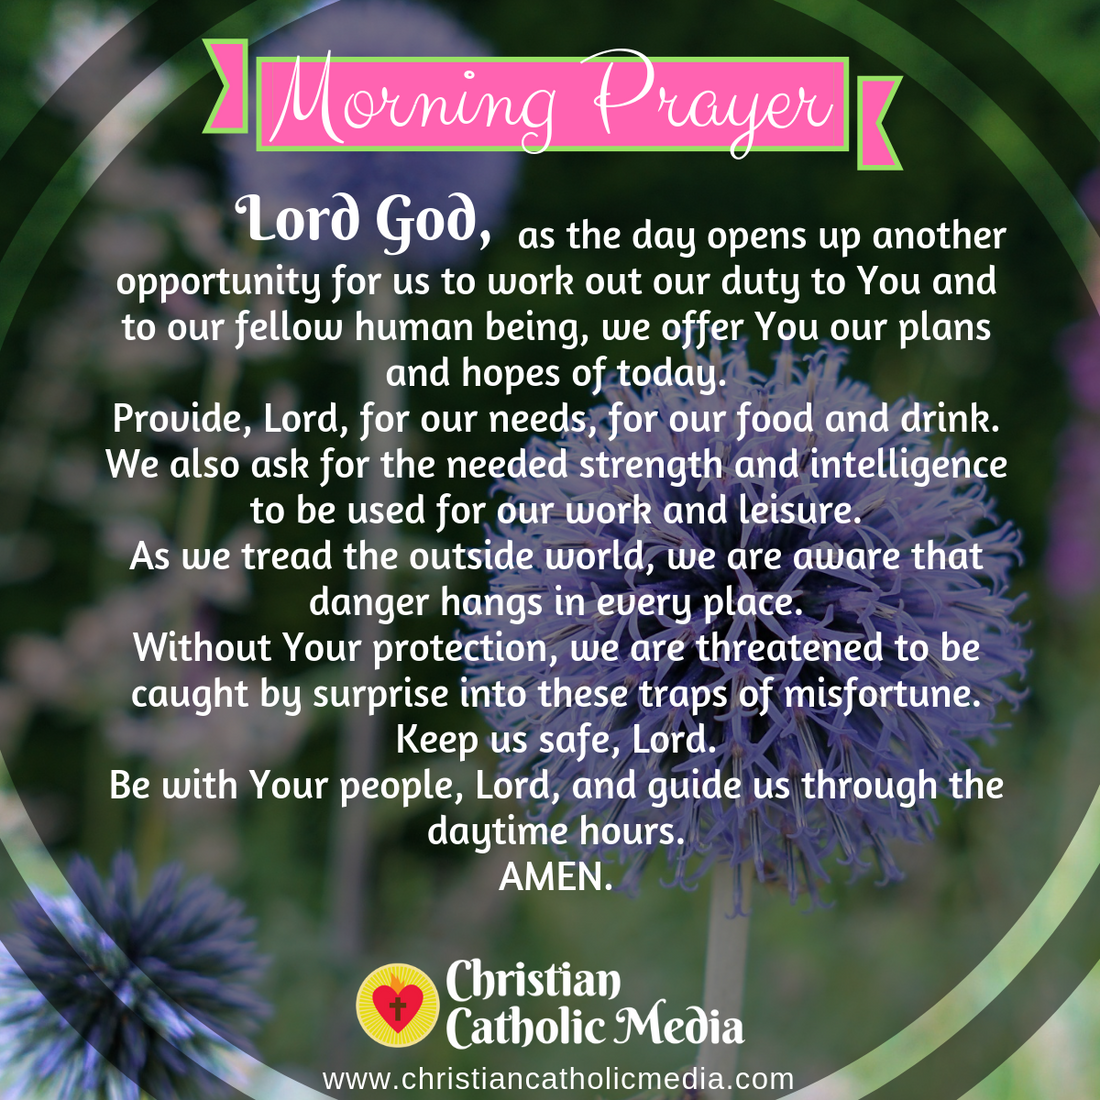 Morning Prayer Catholic Tuesday 3-3-2020